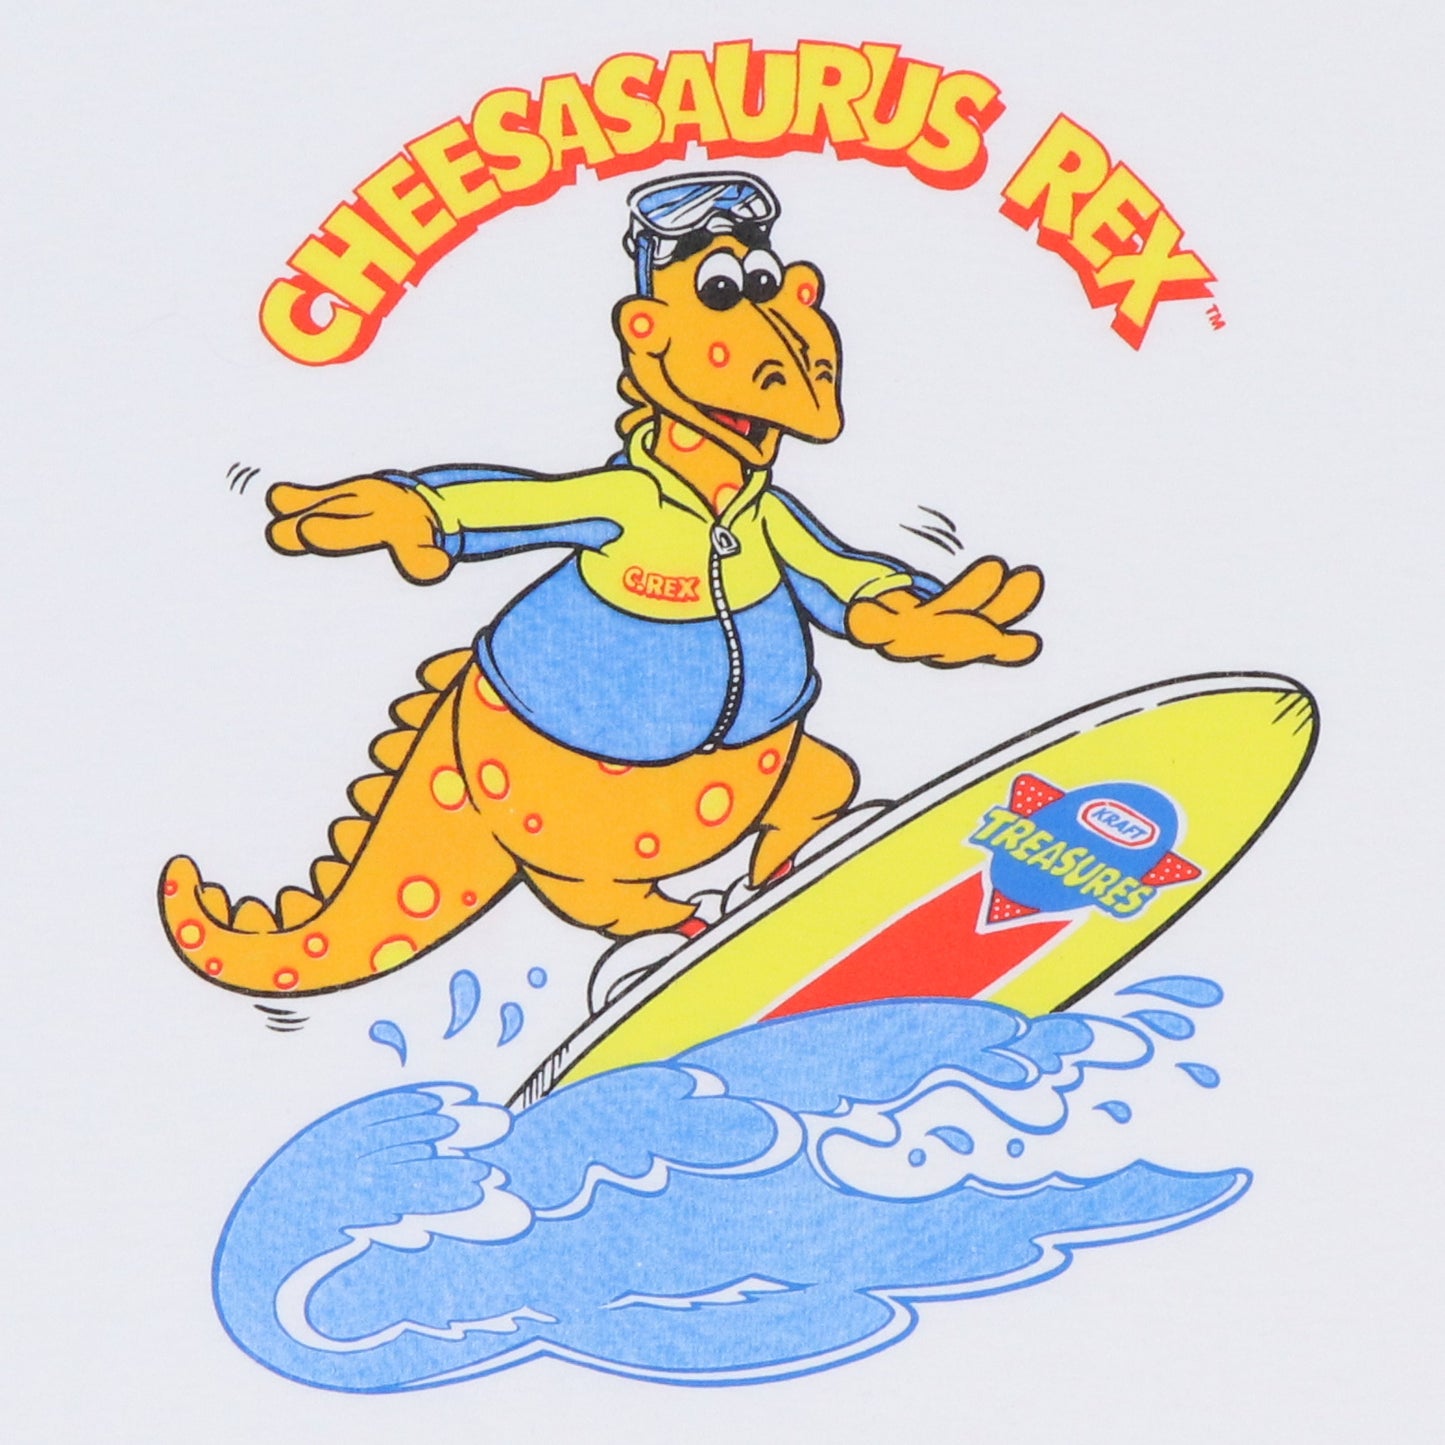 1990s Cheesasaurus Rex Kraft Macaroni And Cheese Shirt